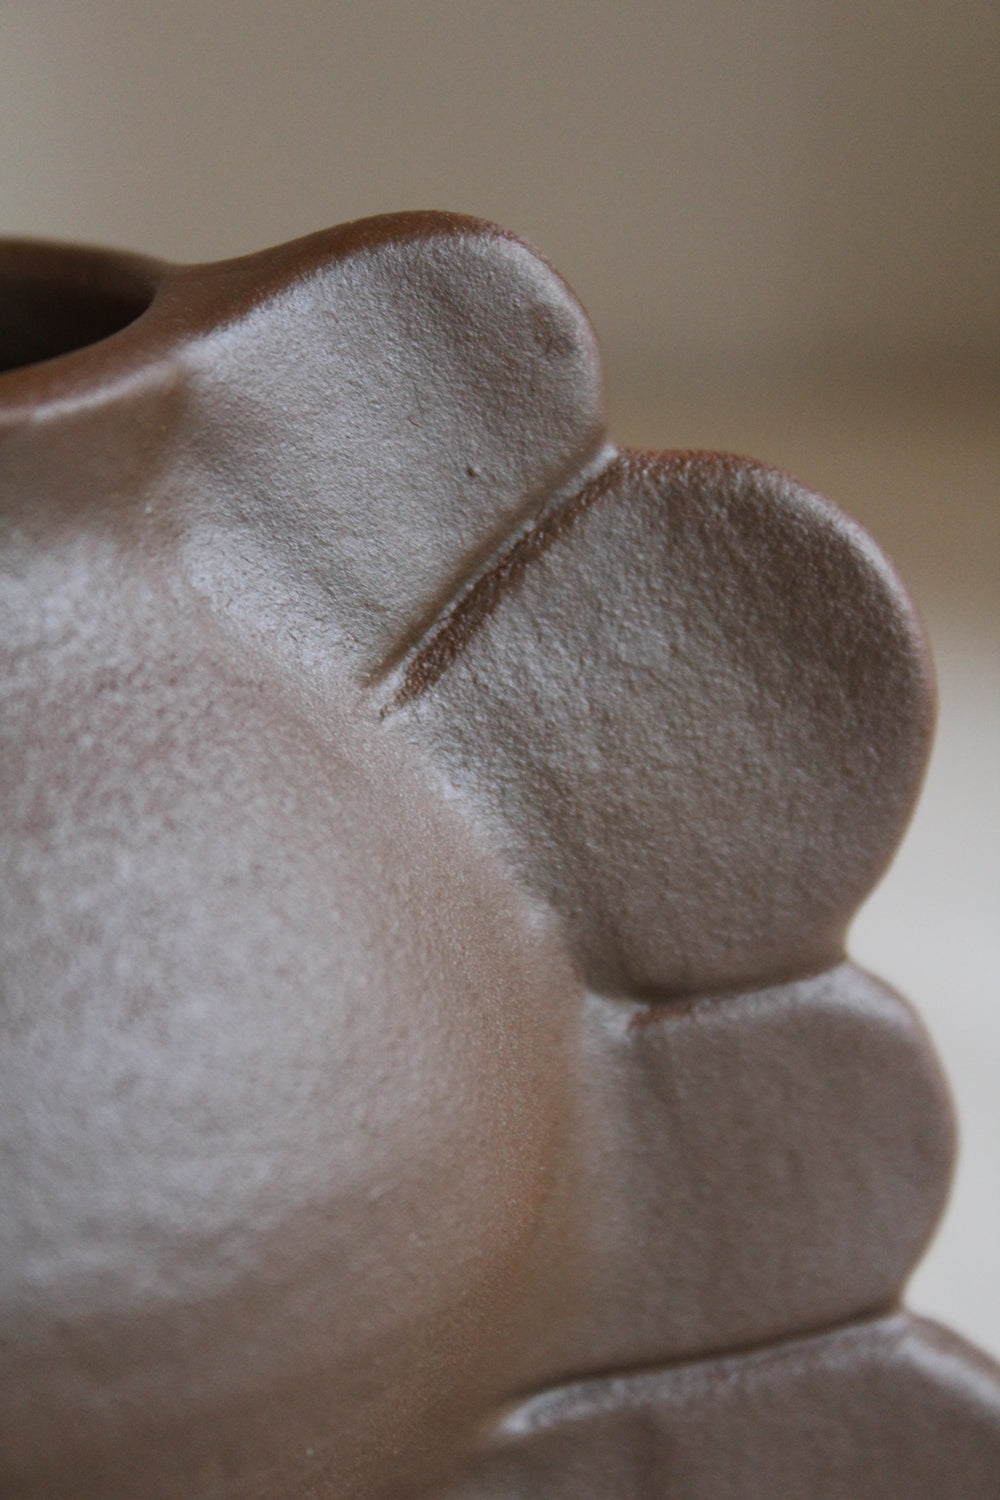 Details of the Medee Brun Vase by Jars Ceramistes.